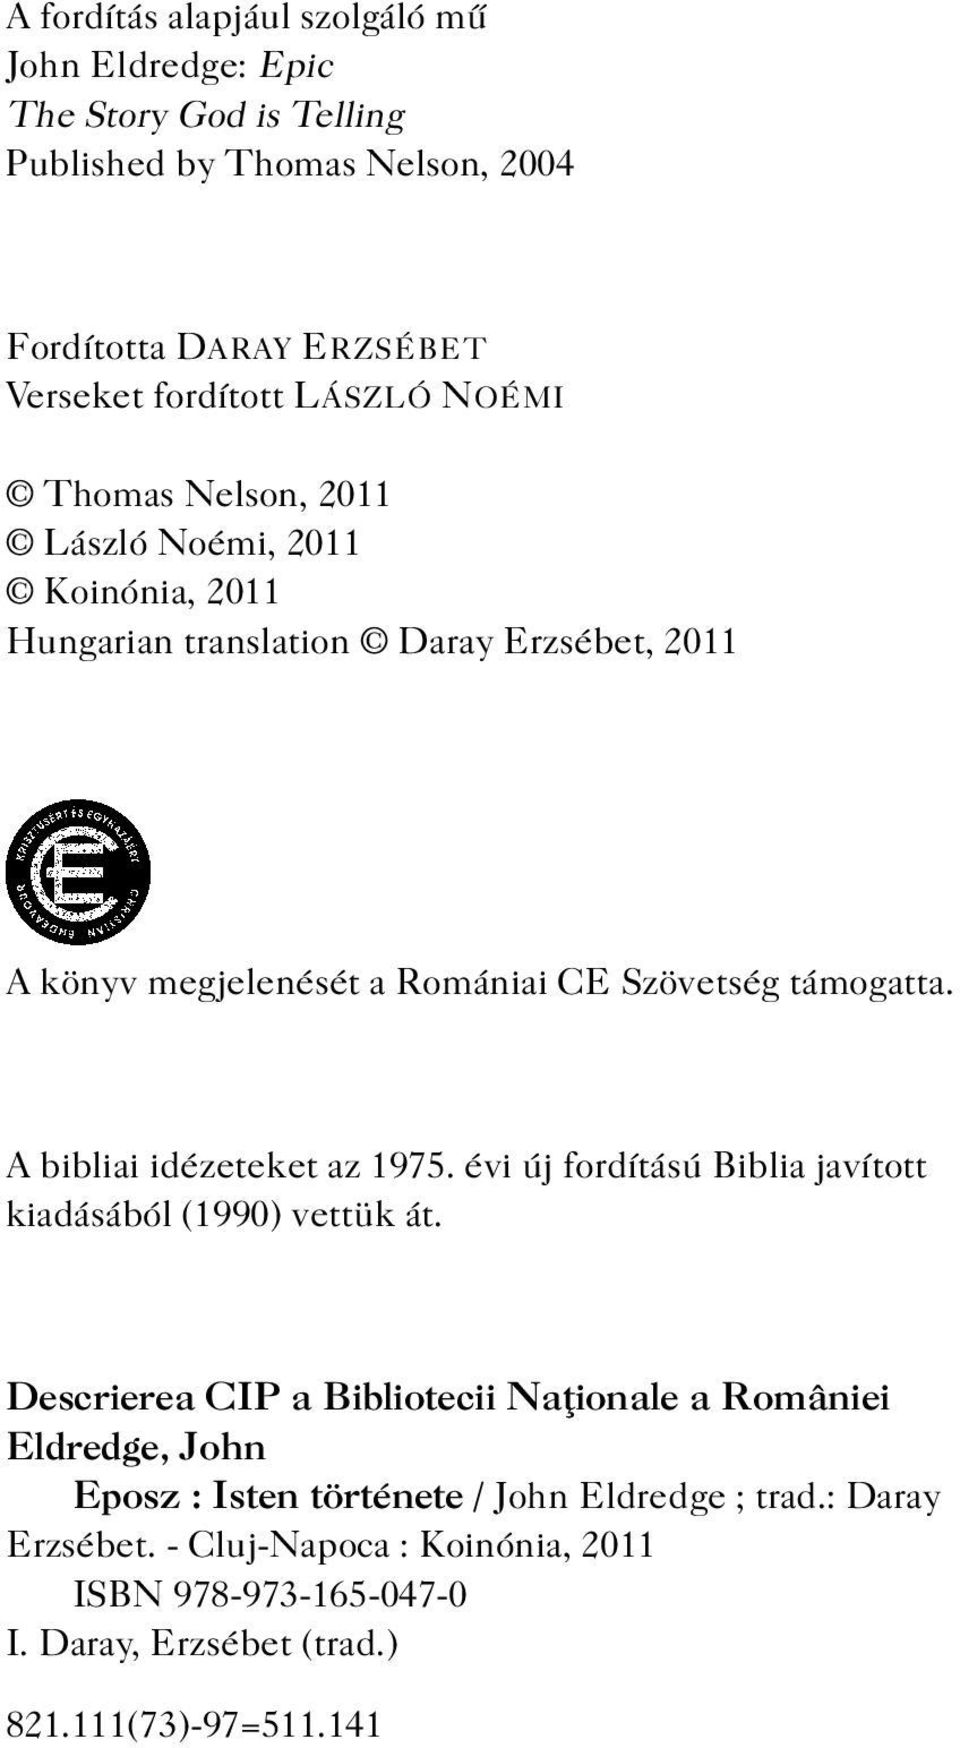 A bibliai idézeteket az 1975. évi új fordítású Biblia javított kiadásából (1990) vettük át.